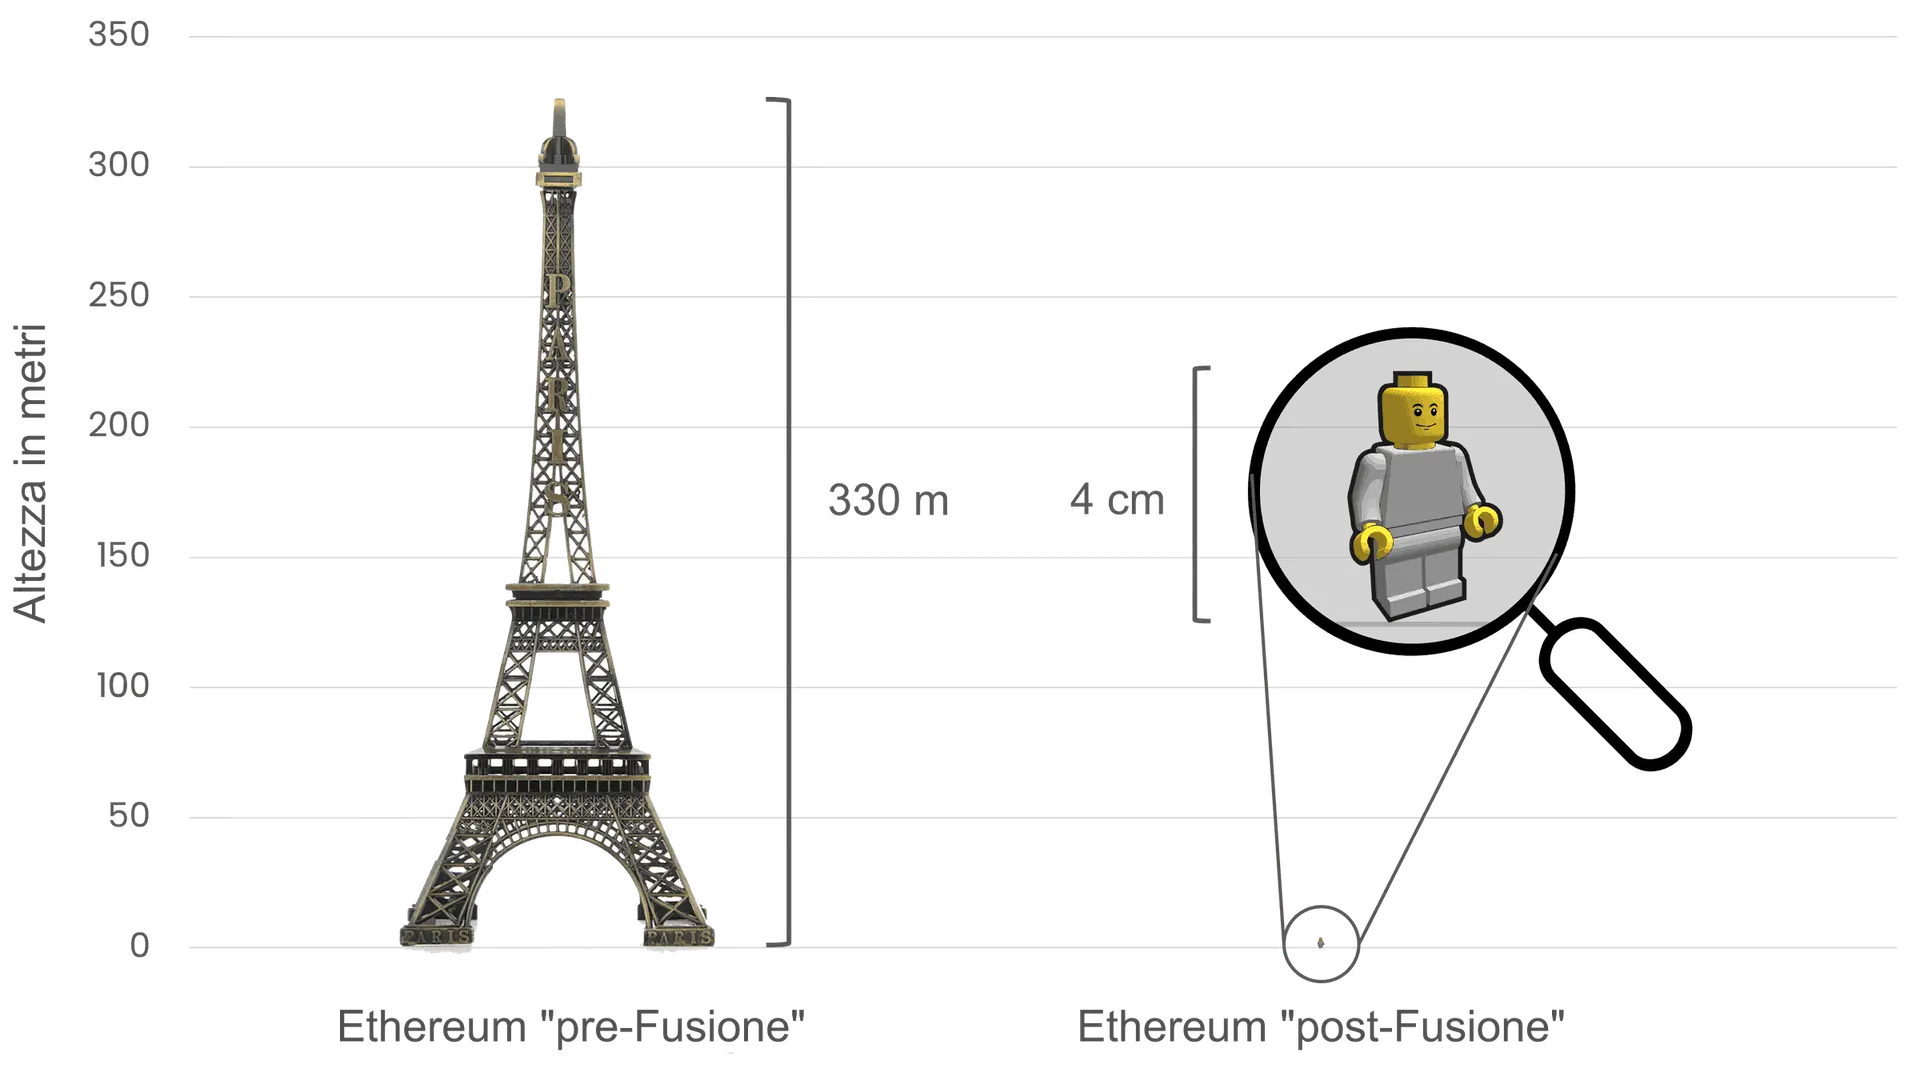 Confronto tra il consumo energetico di Ethereum prima e dopo La Fusione, utilizzando la Torre Eiffel (alta 330 metri) sulla sinistra per simbolizzare il consumo energetico prima della Fusione e un piccolo personaggio Lego di 4 cm sulla destra per rappresentare la drastica riduzione del consumo energetico dopo di essa